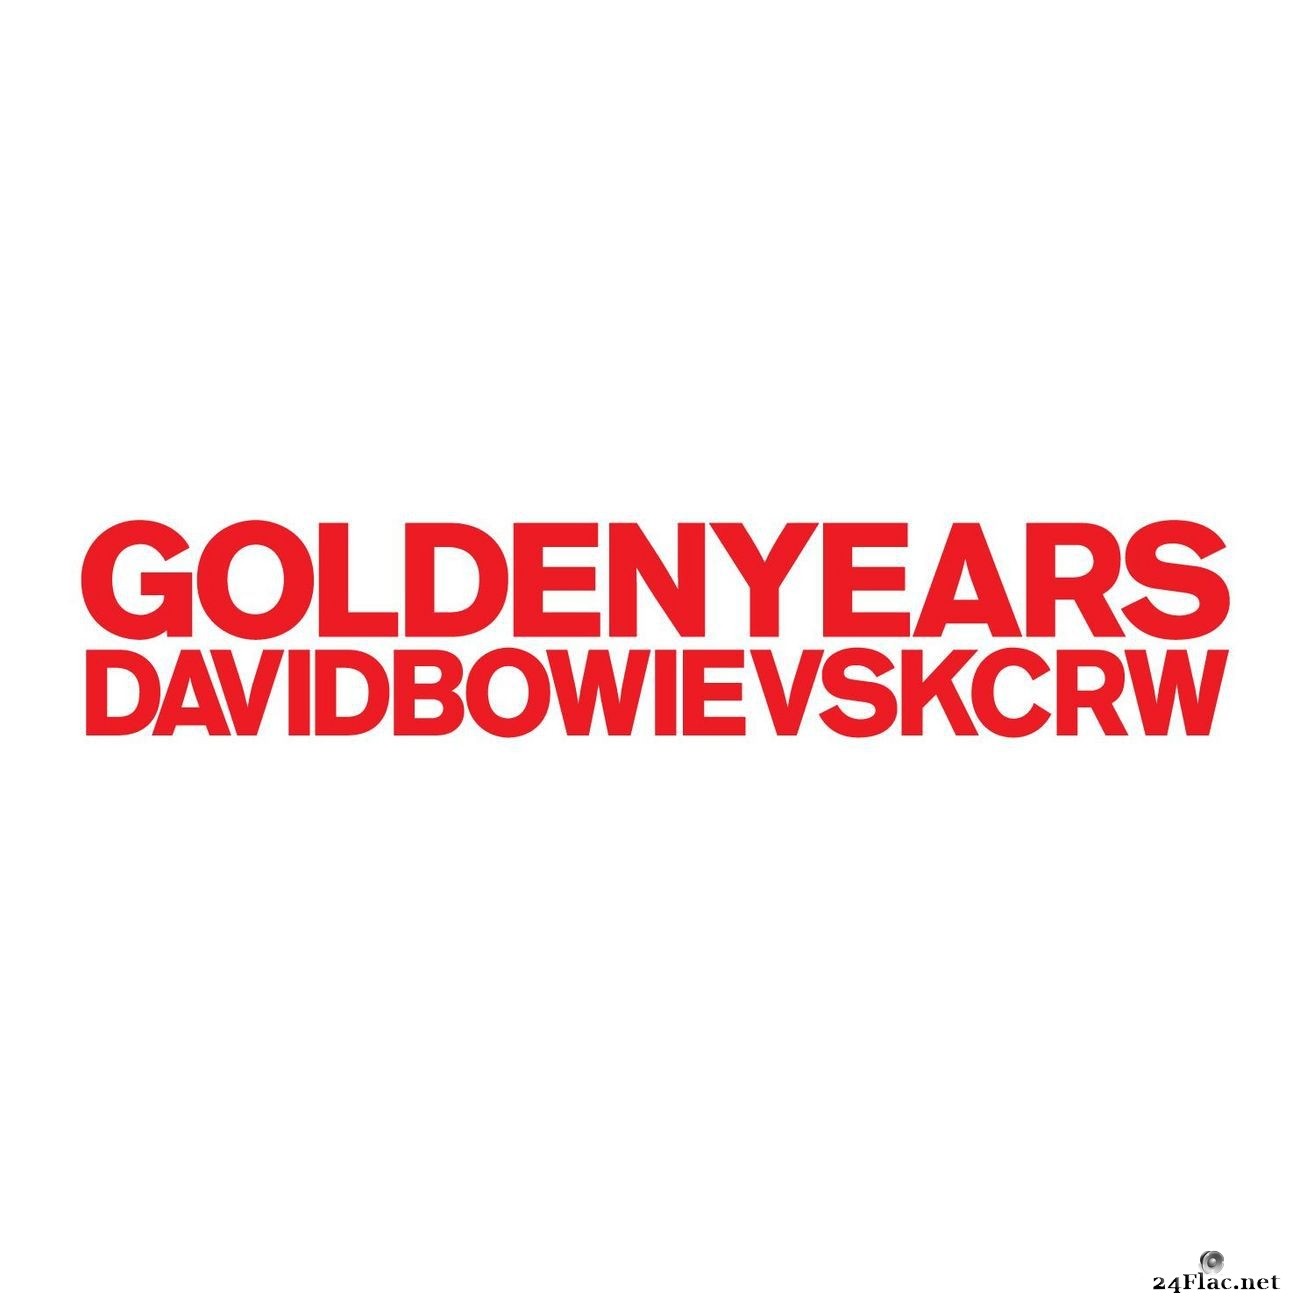 David Bowie vs KCRW - Golden Years (David Bowie vs KCRW) (2011) FLAC